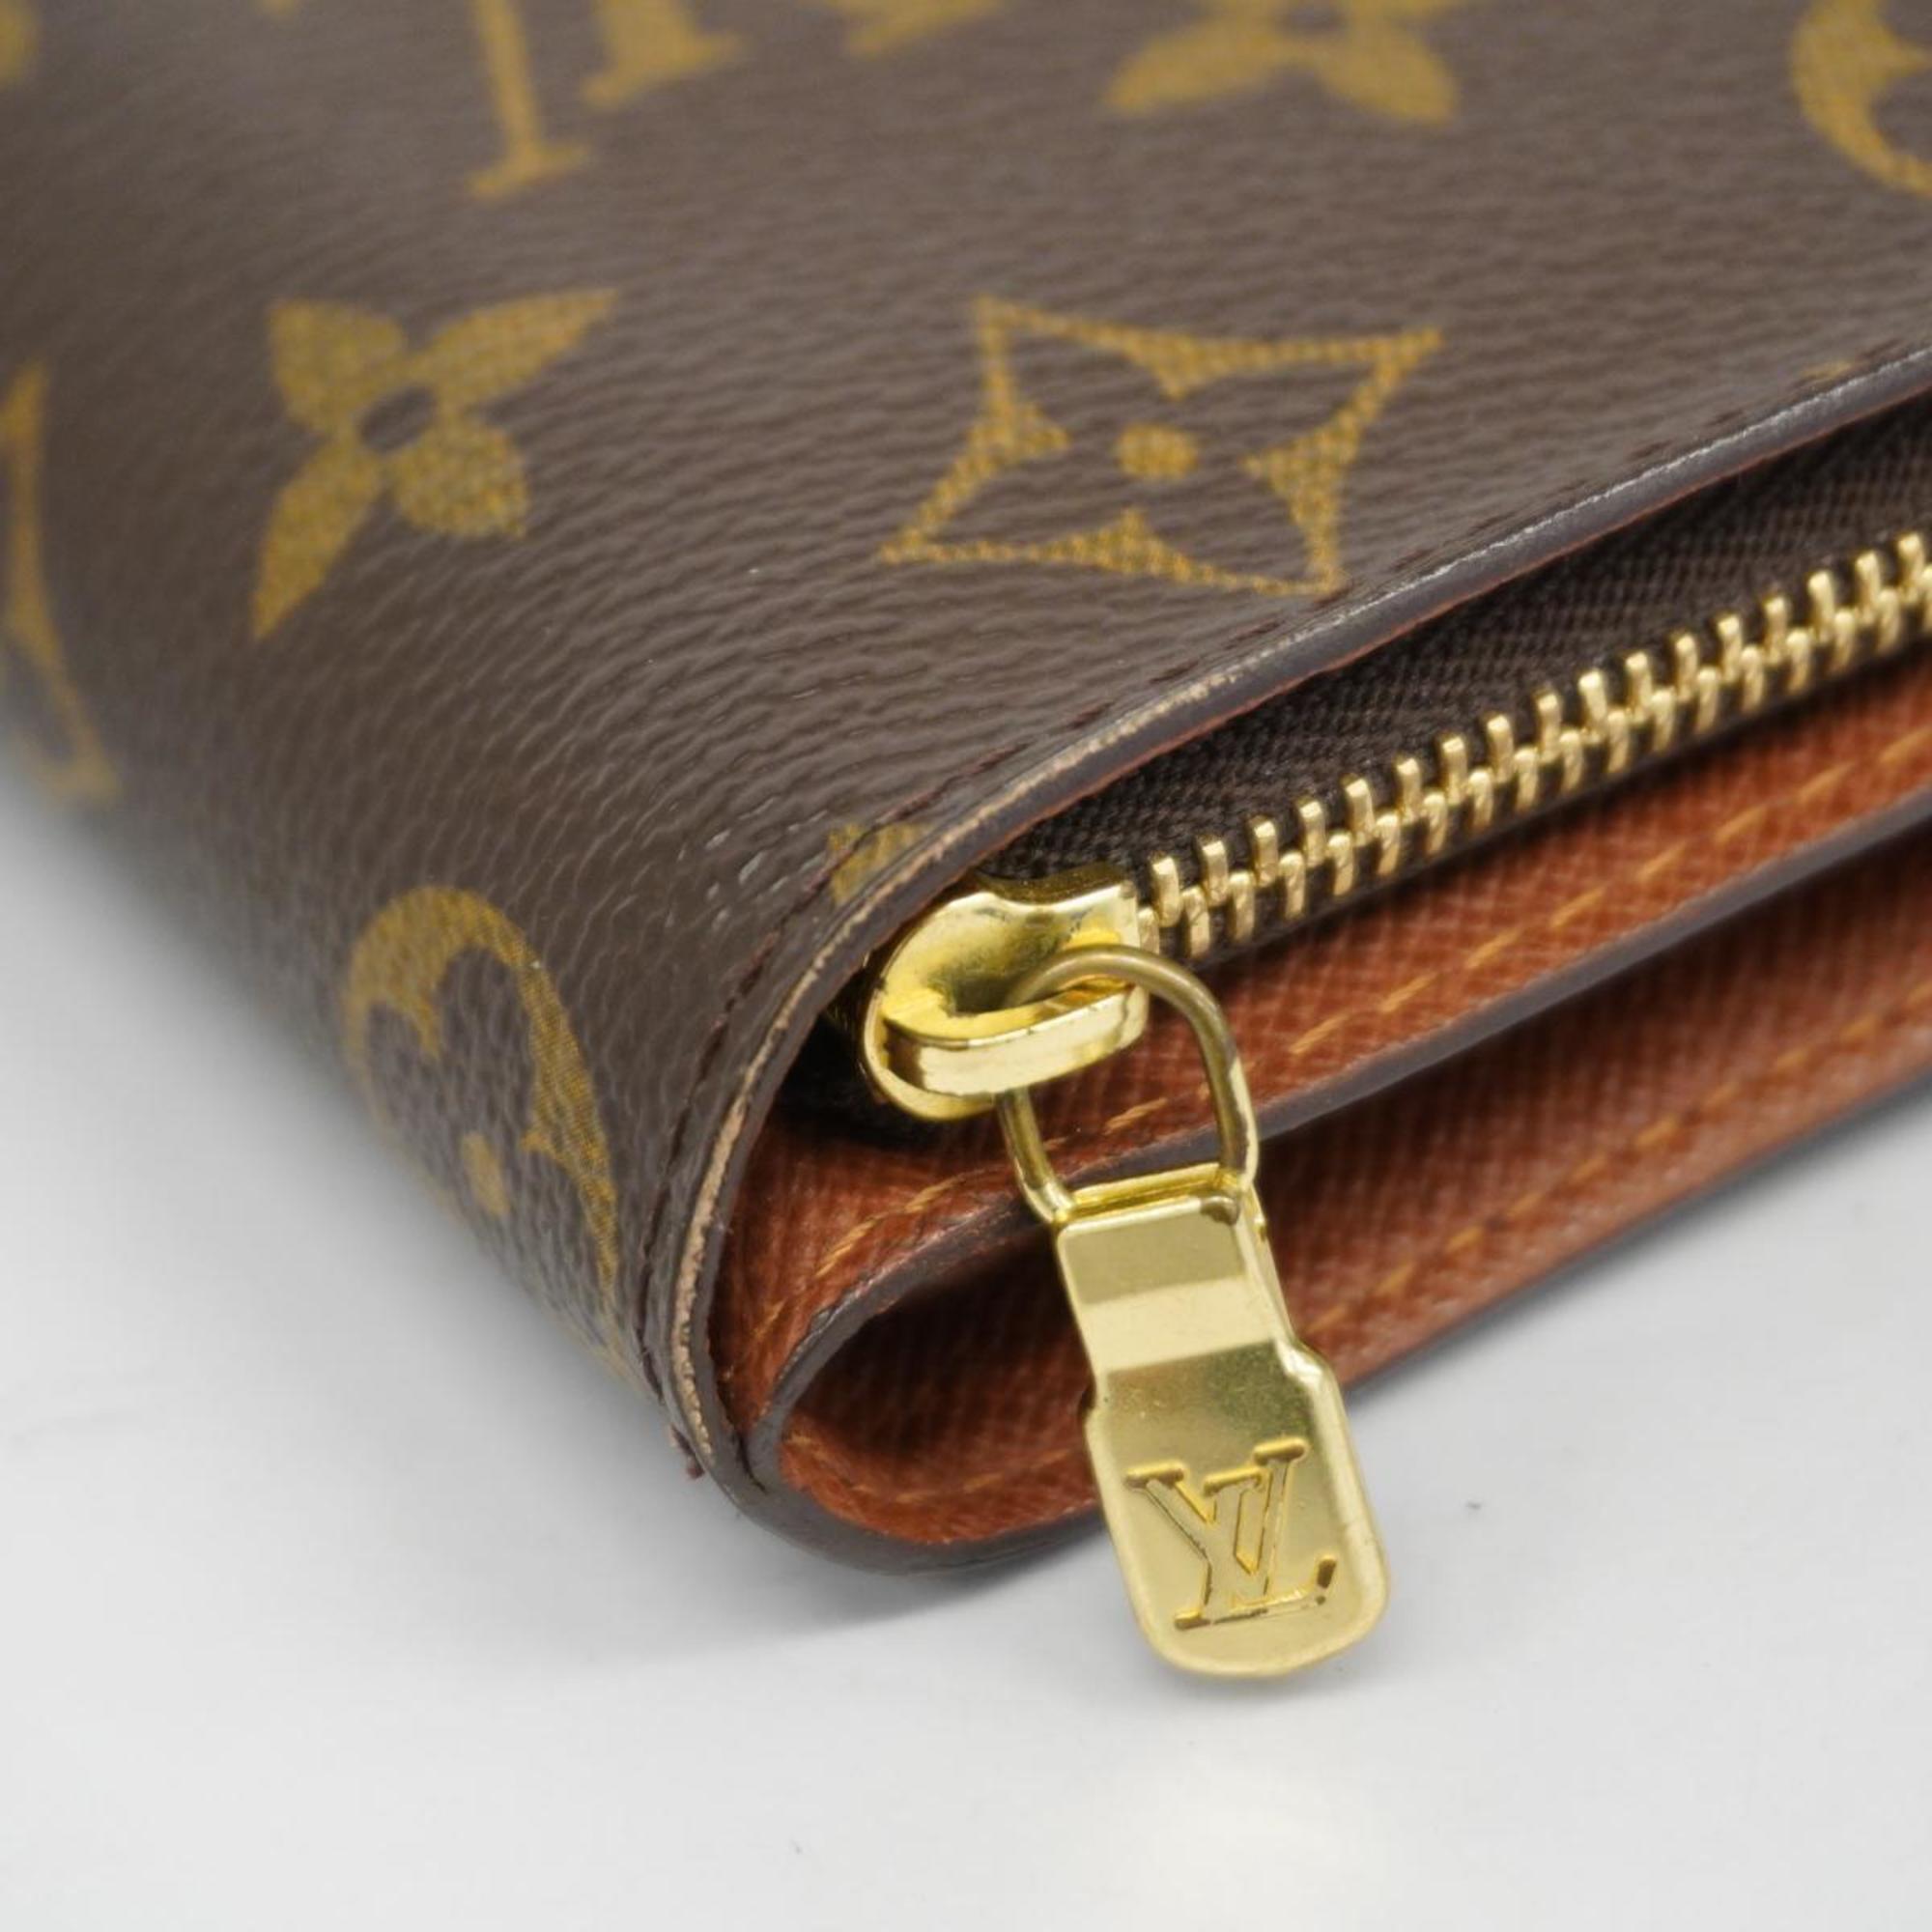 Louis Vuitton Wallet Monogram Compact Zip M61667 Brown Men's Women's